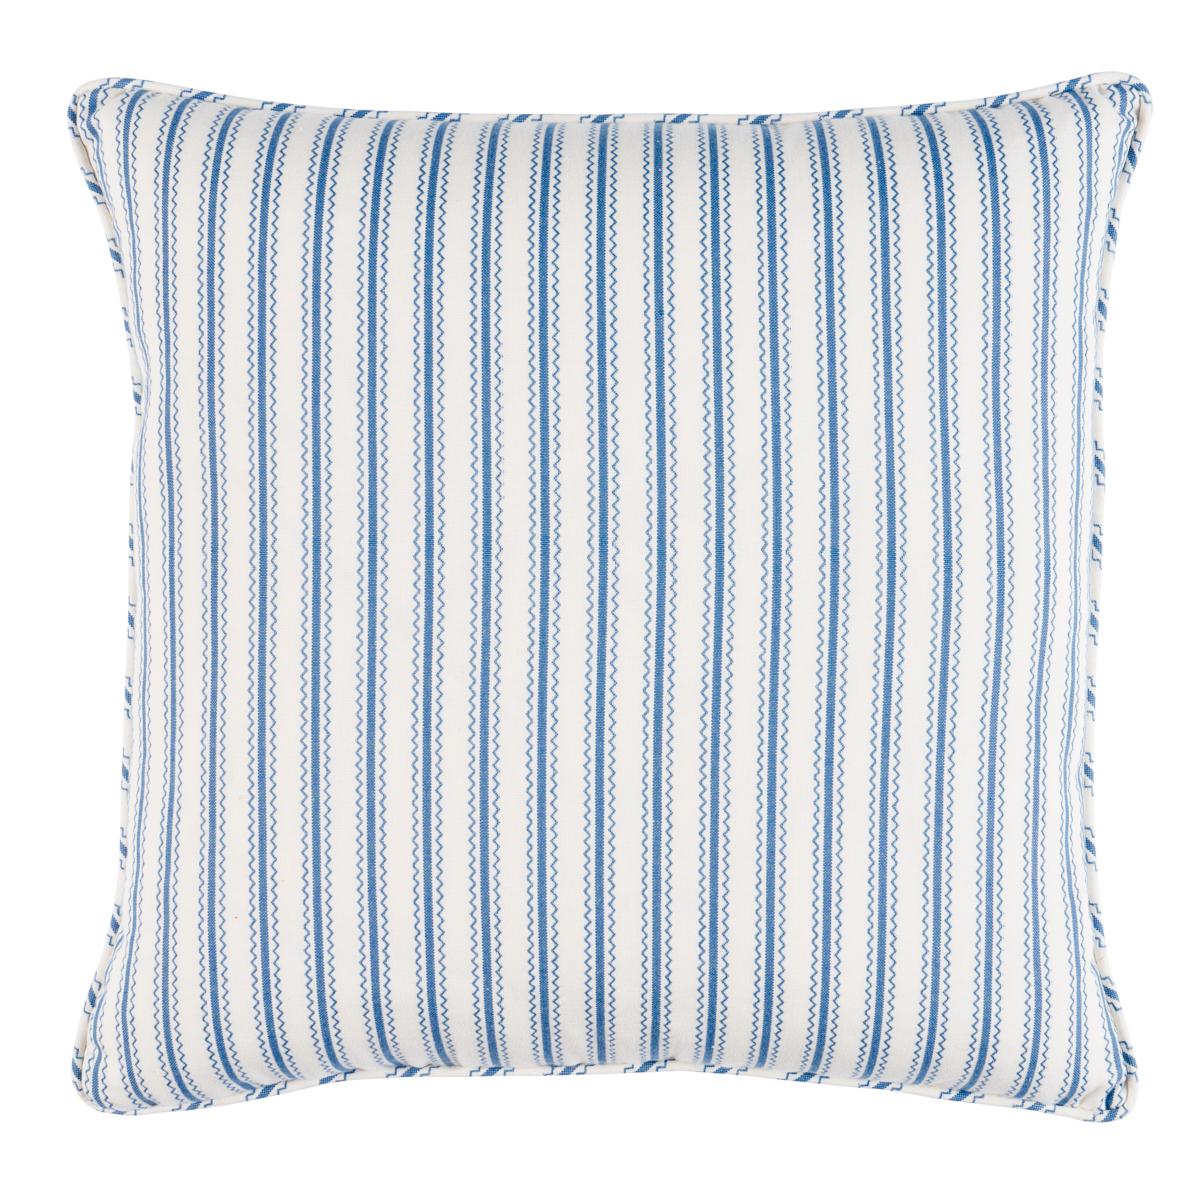 Birdie Ticking Stripe Pillow in Indigo 20 x 20" For Sale